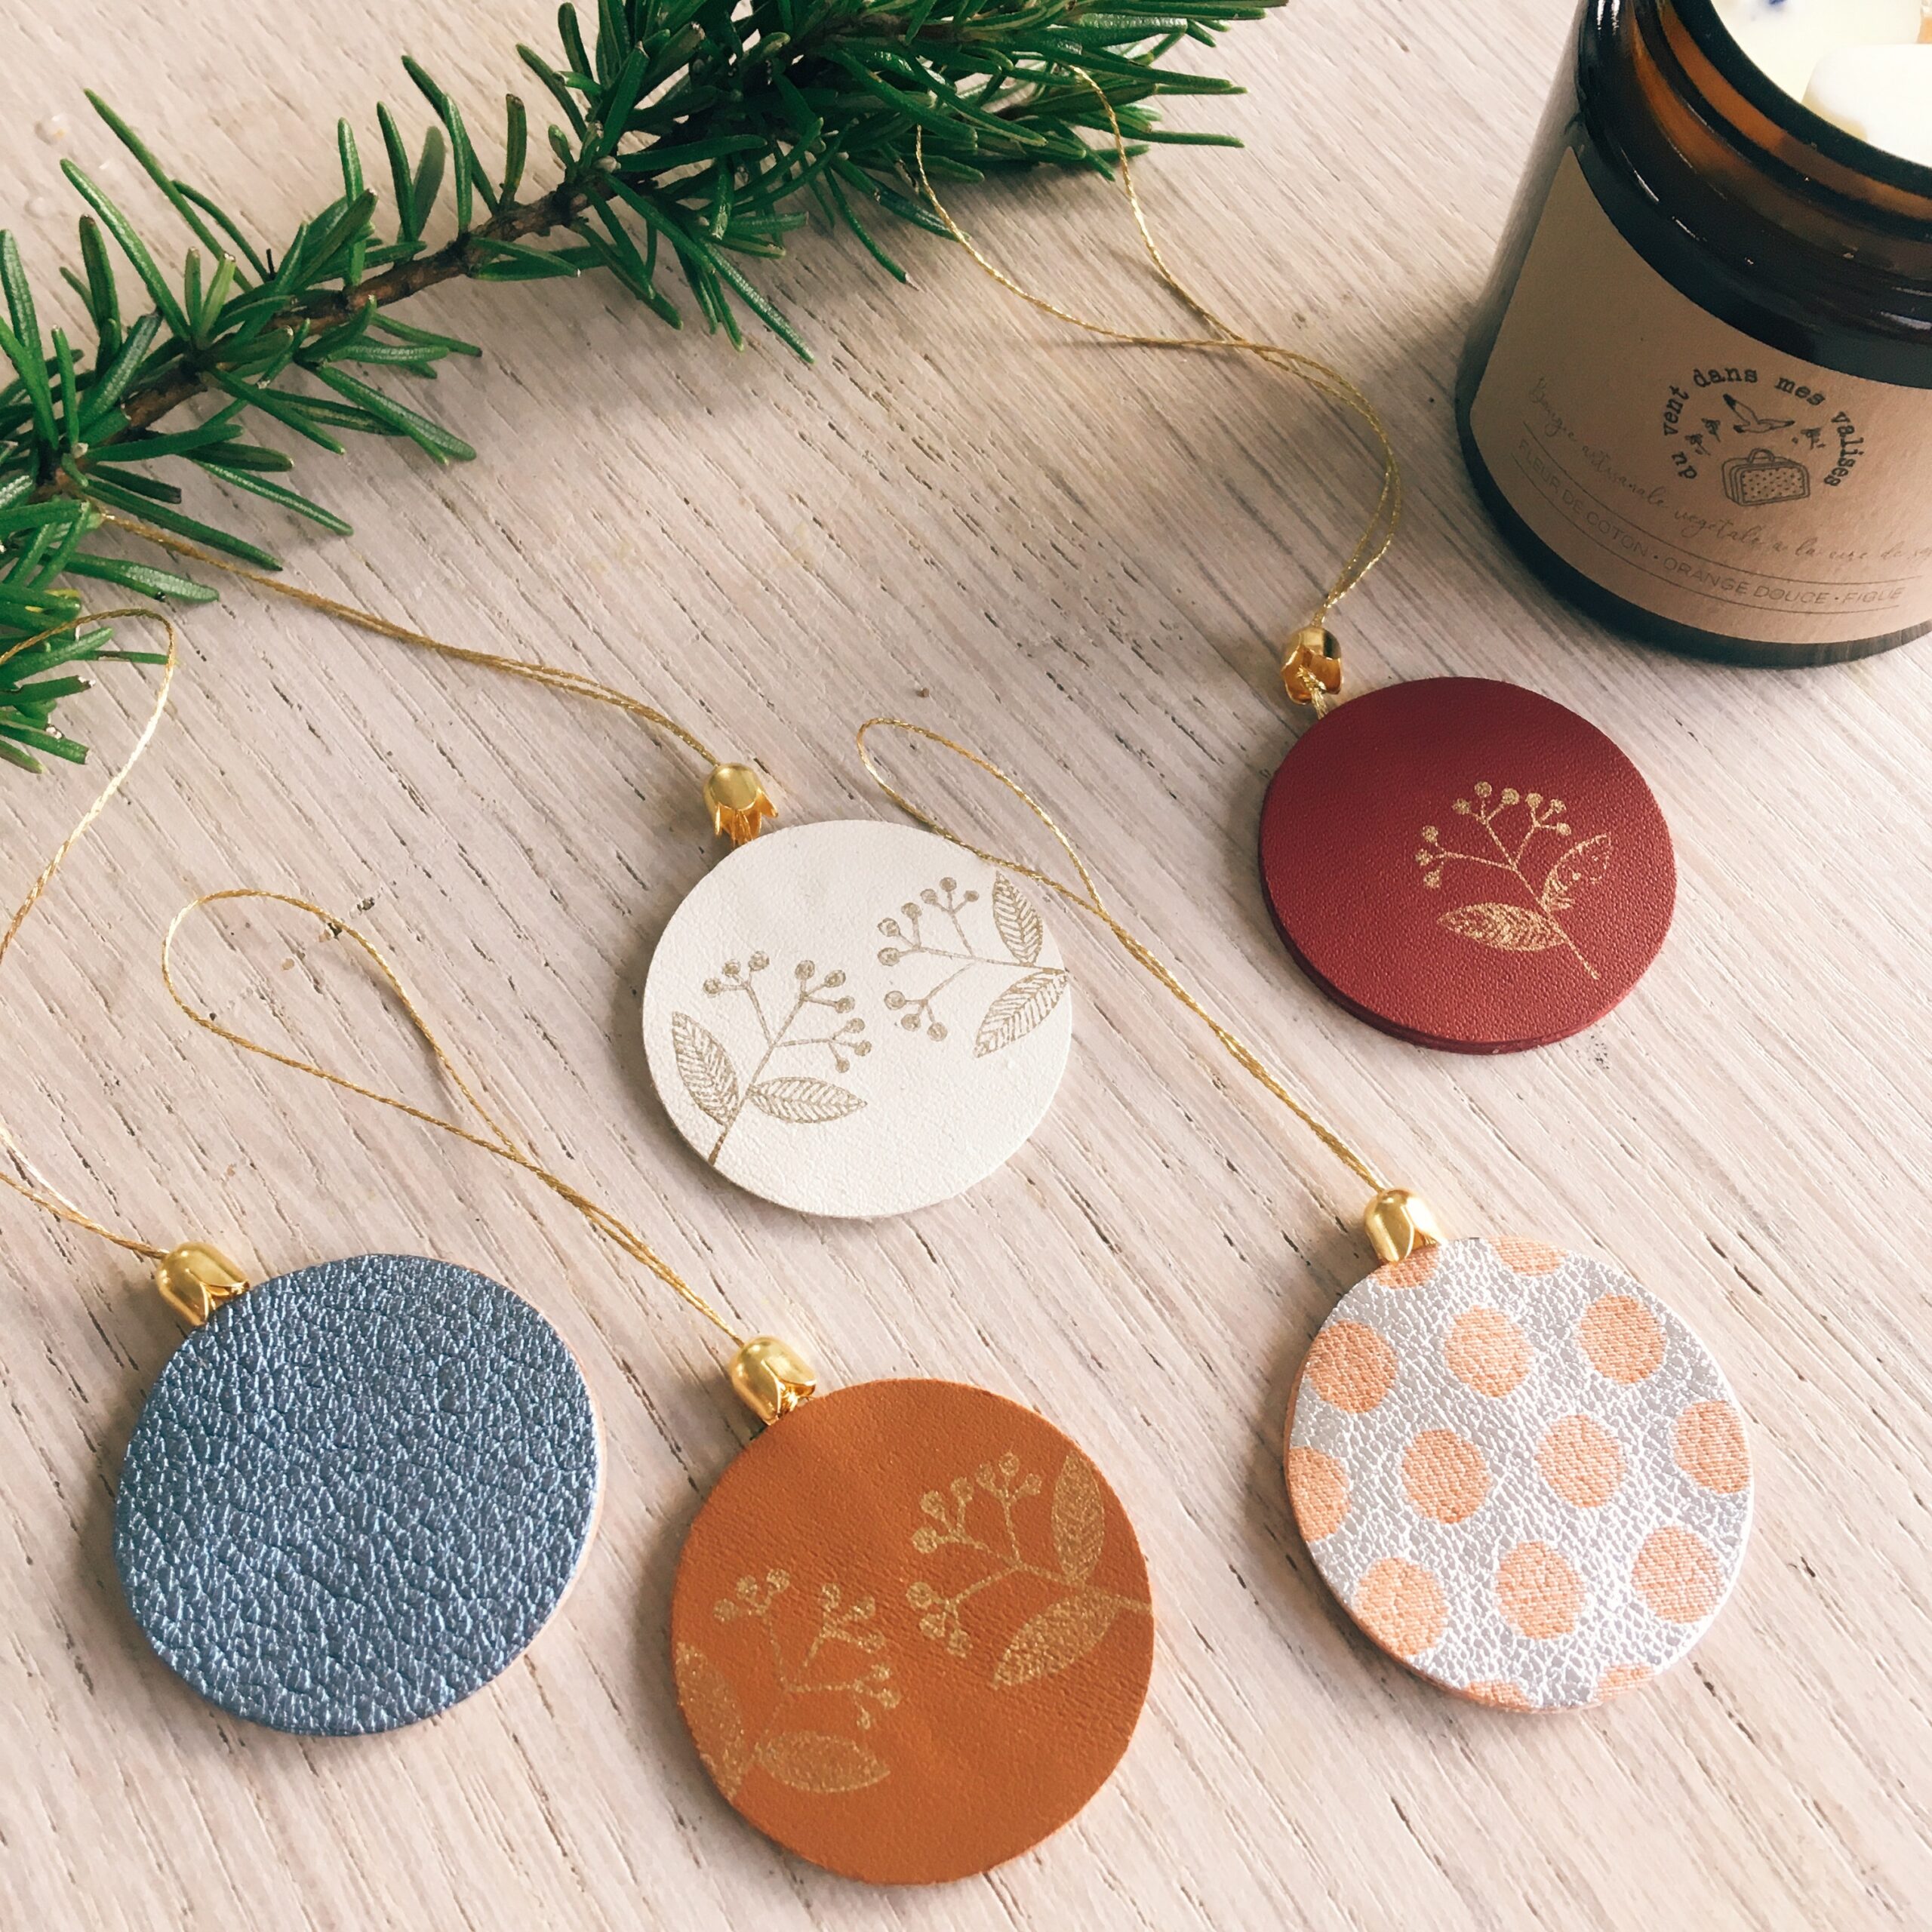 bijoux-de-sapins-de-Noel-boules-en-cuir-avec-motifs-dores-et-corolle-or-fin-du-vent-dans-mes-valises